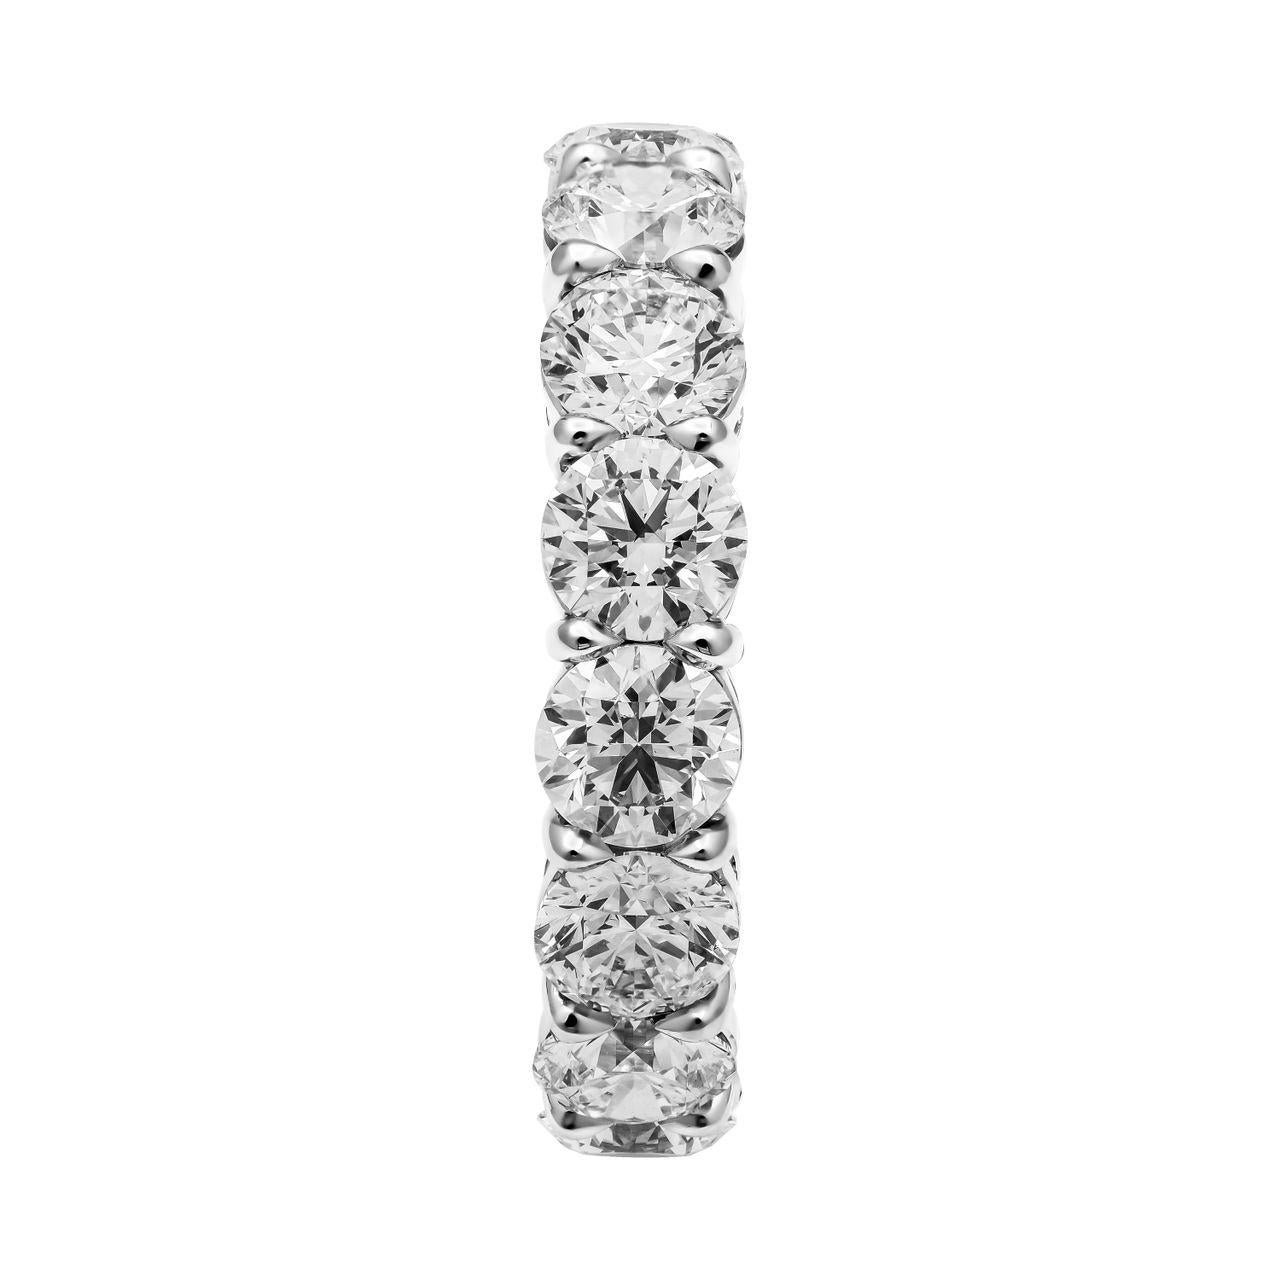 GIA zertifiziert 6 Karat insgesamt, Ewigkeit Diamant-Stil, handgefertigt,  montiert in Platin 950, insgesamt 15 GIA-zertifizierte, rund geschliffene Diamanten von insgesamt 6ct, 0,40ct pro Stein, Farbe zwischen G und F, mit einer Klarheit von VS1